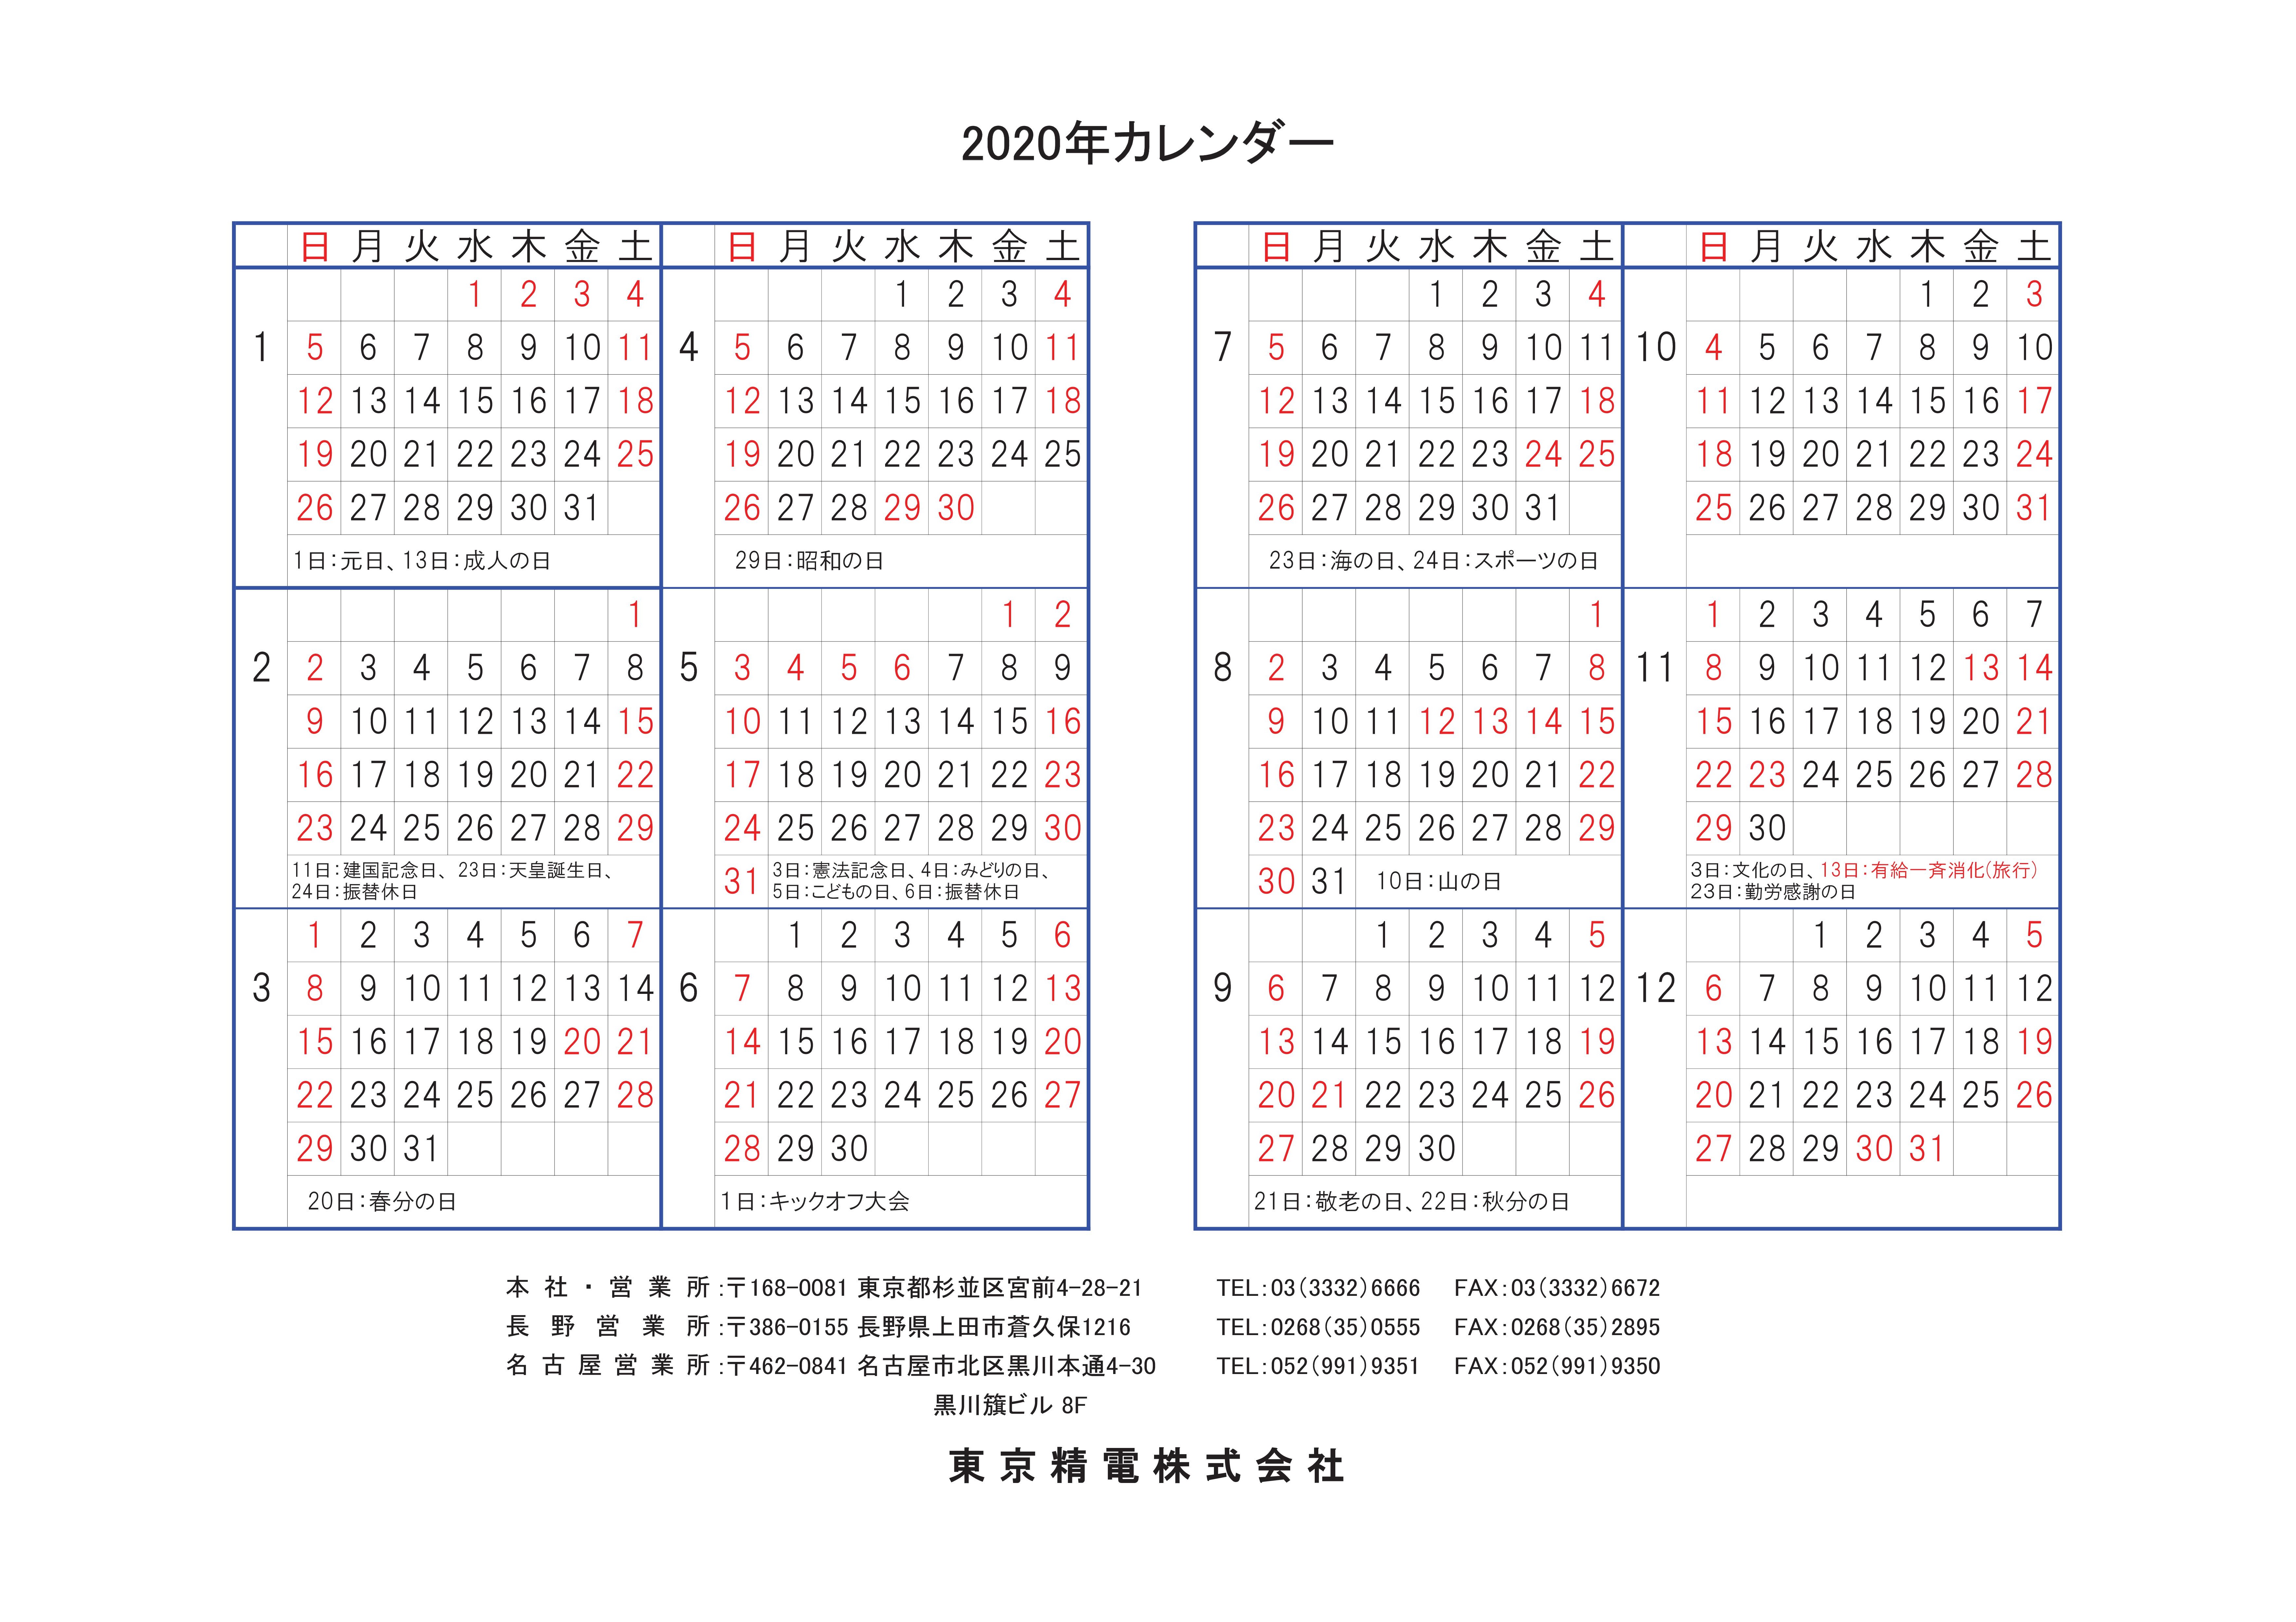 会社カレンダー 会社情報 東京精電株式会社